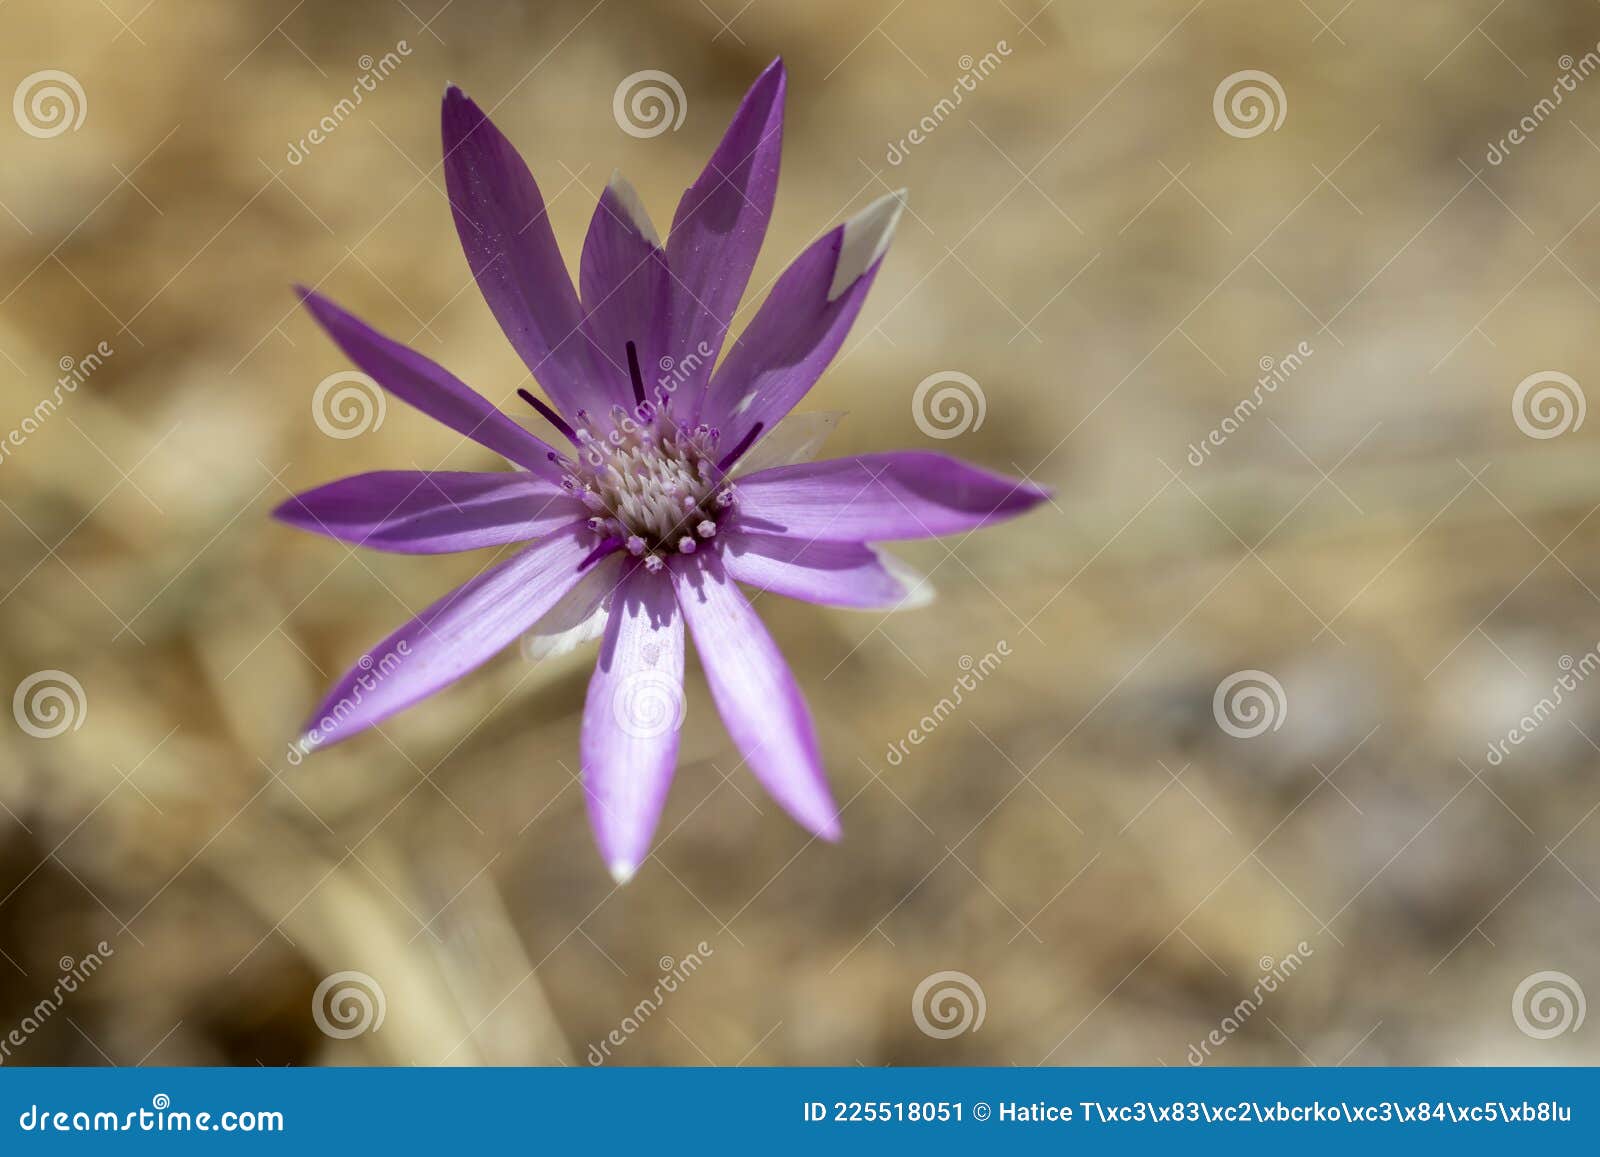 Fleur Violette En Forme D'étoile De La Famille Des Marguerites. Macro  Photo. Image stock - Image du isolement, lames: 225518051